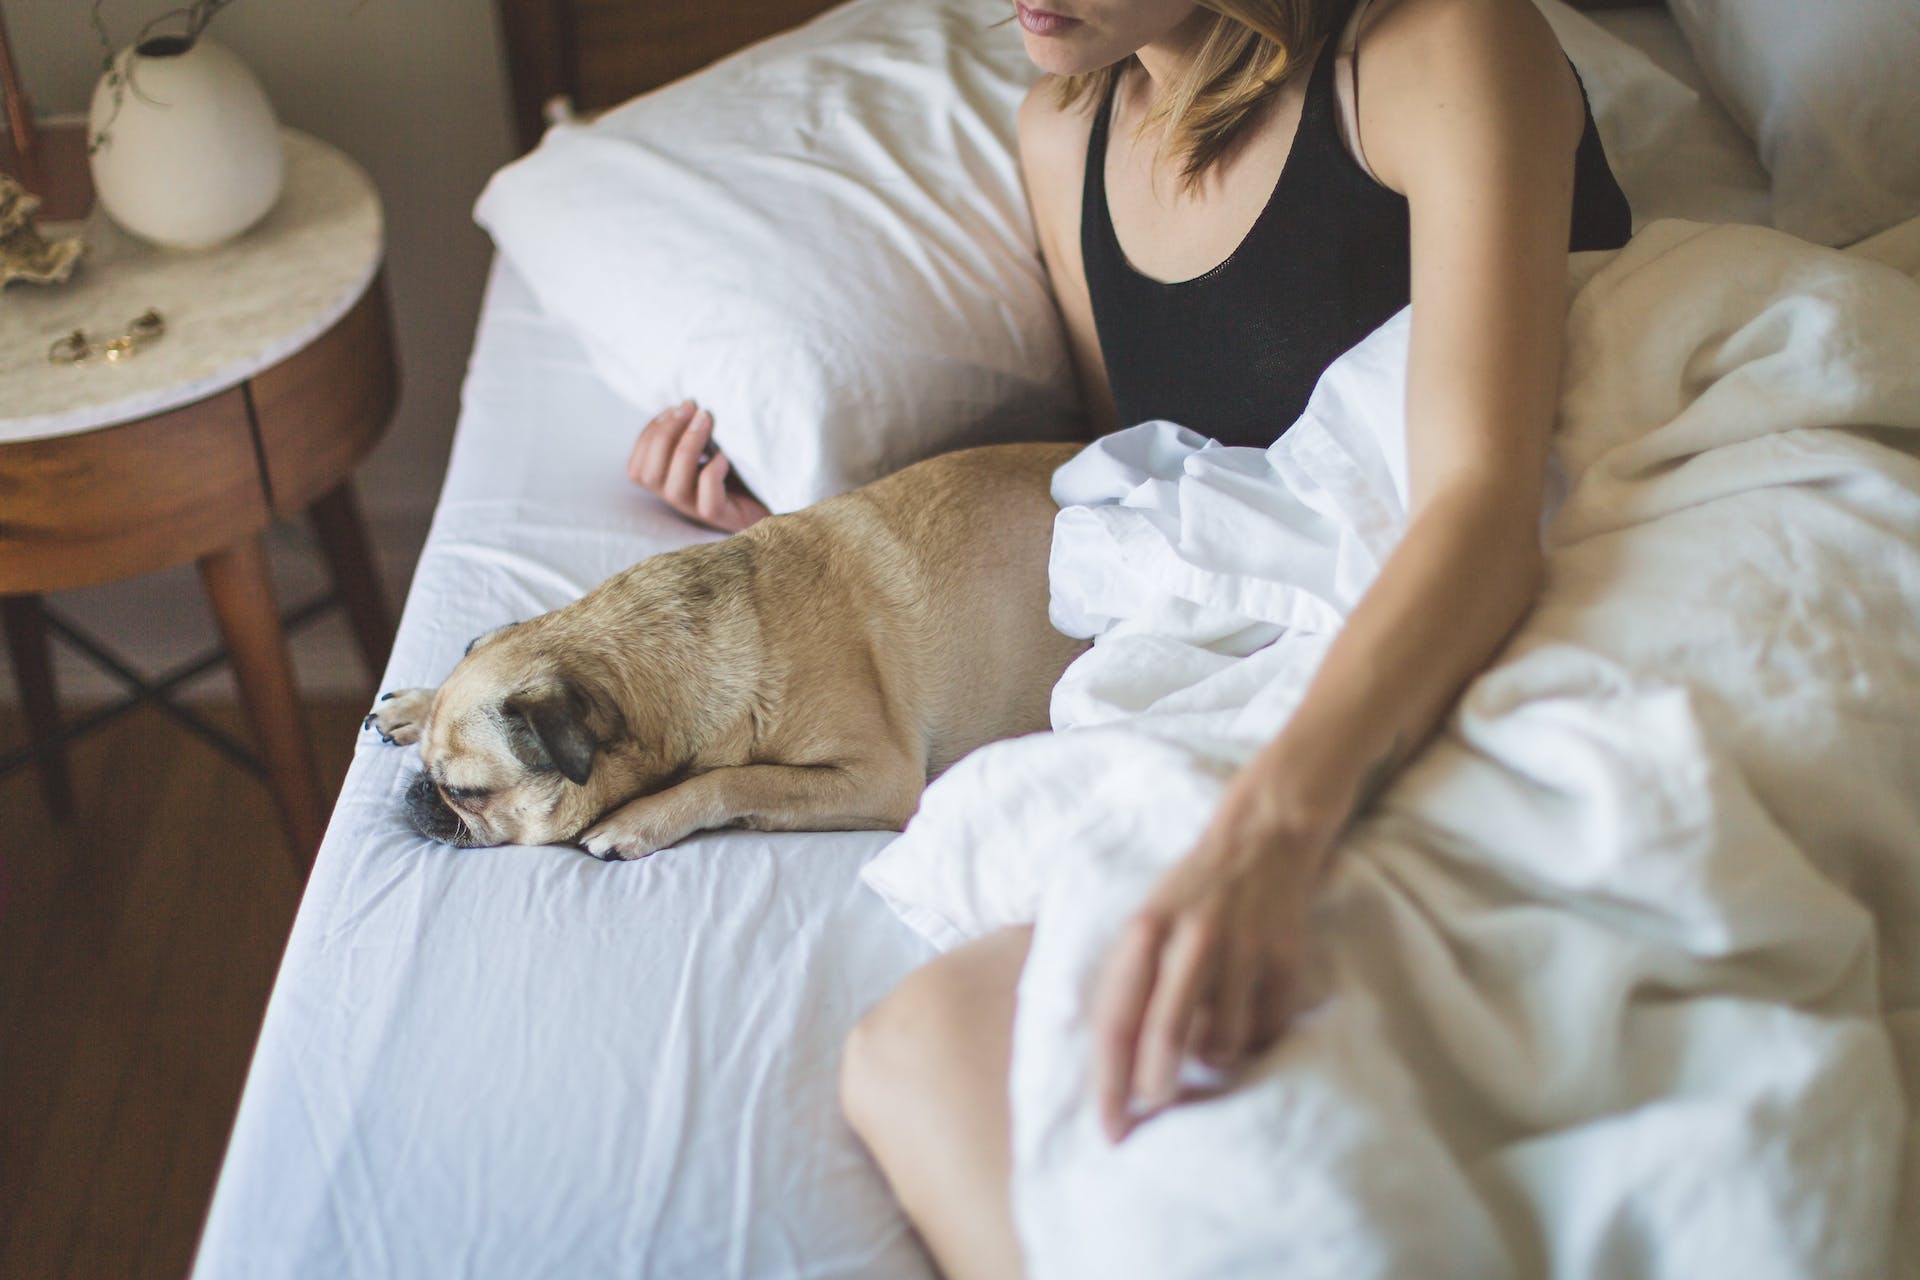 Frau und Hund im Bett | Quelle: Pexels